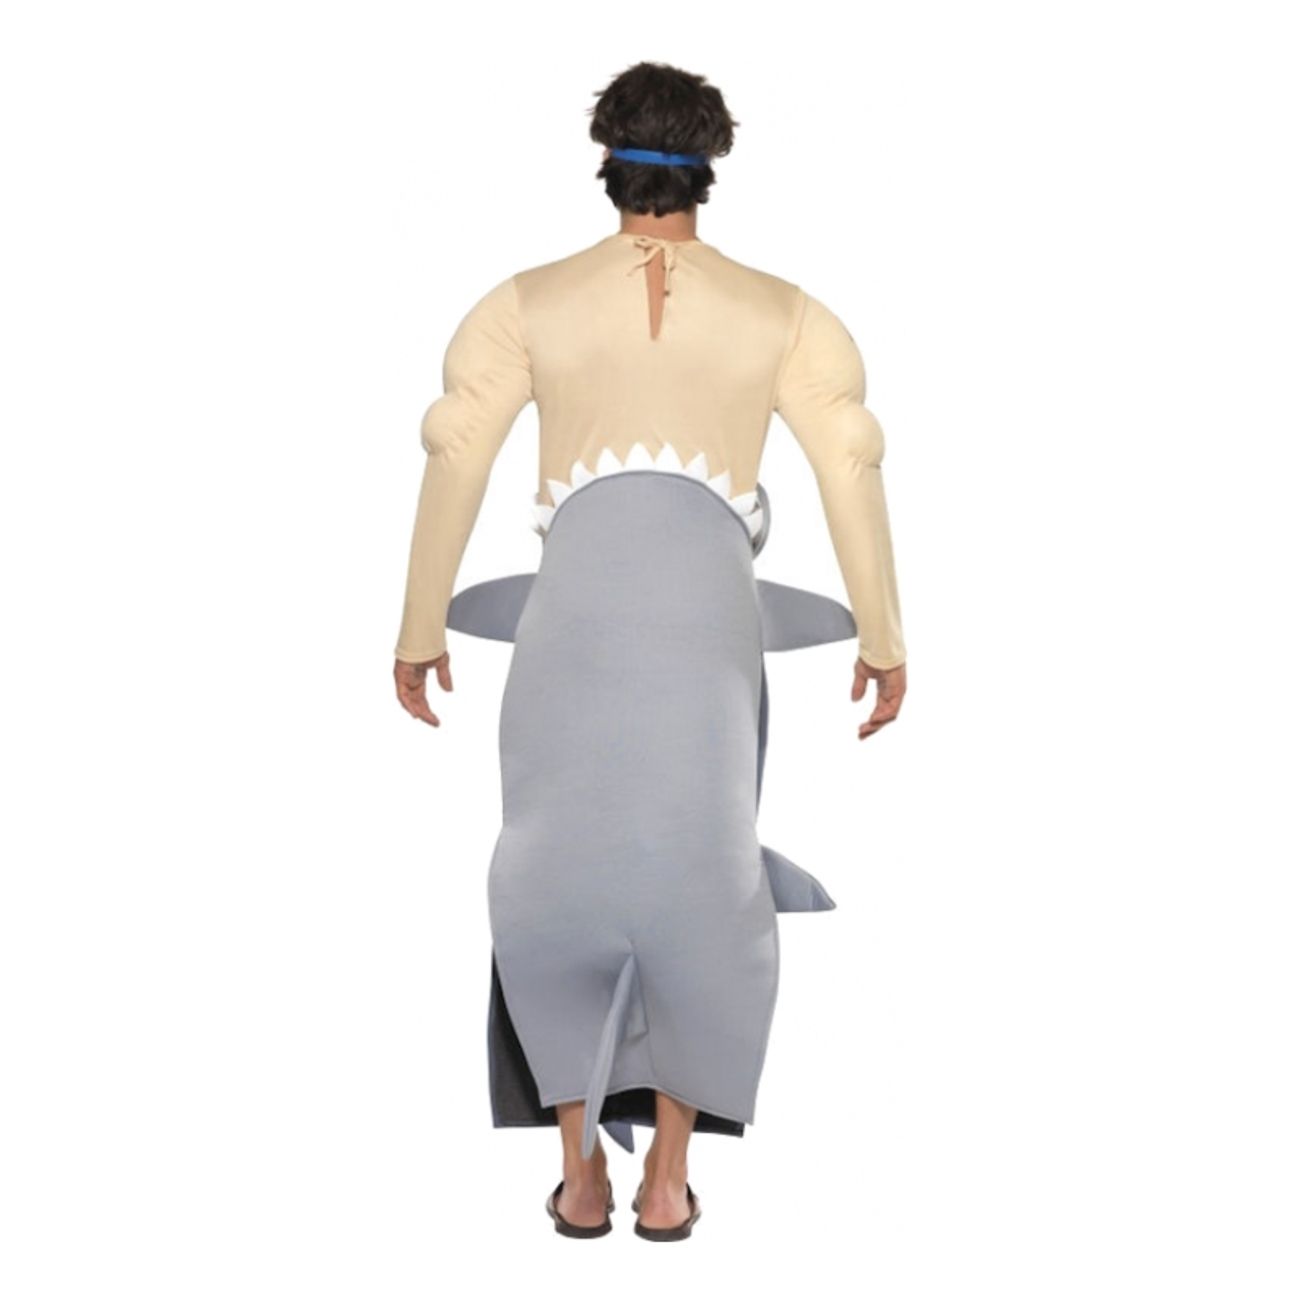 man-eating-shark-costume-3